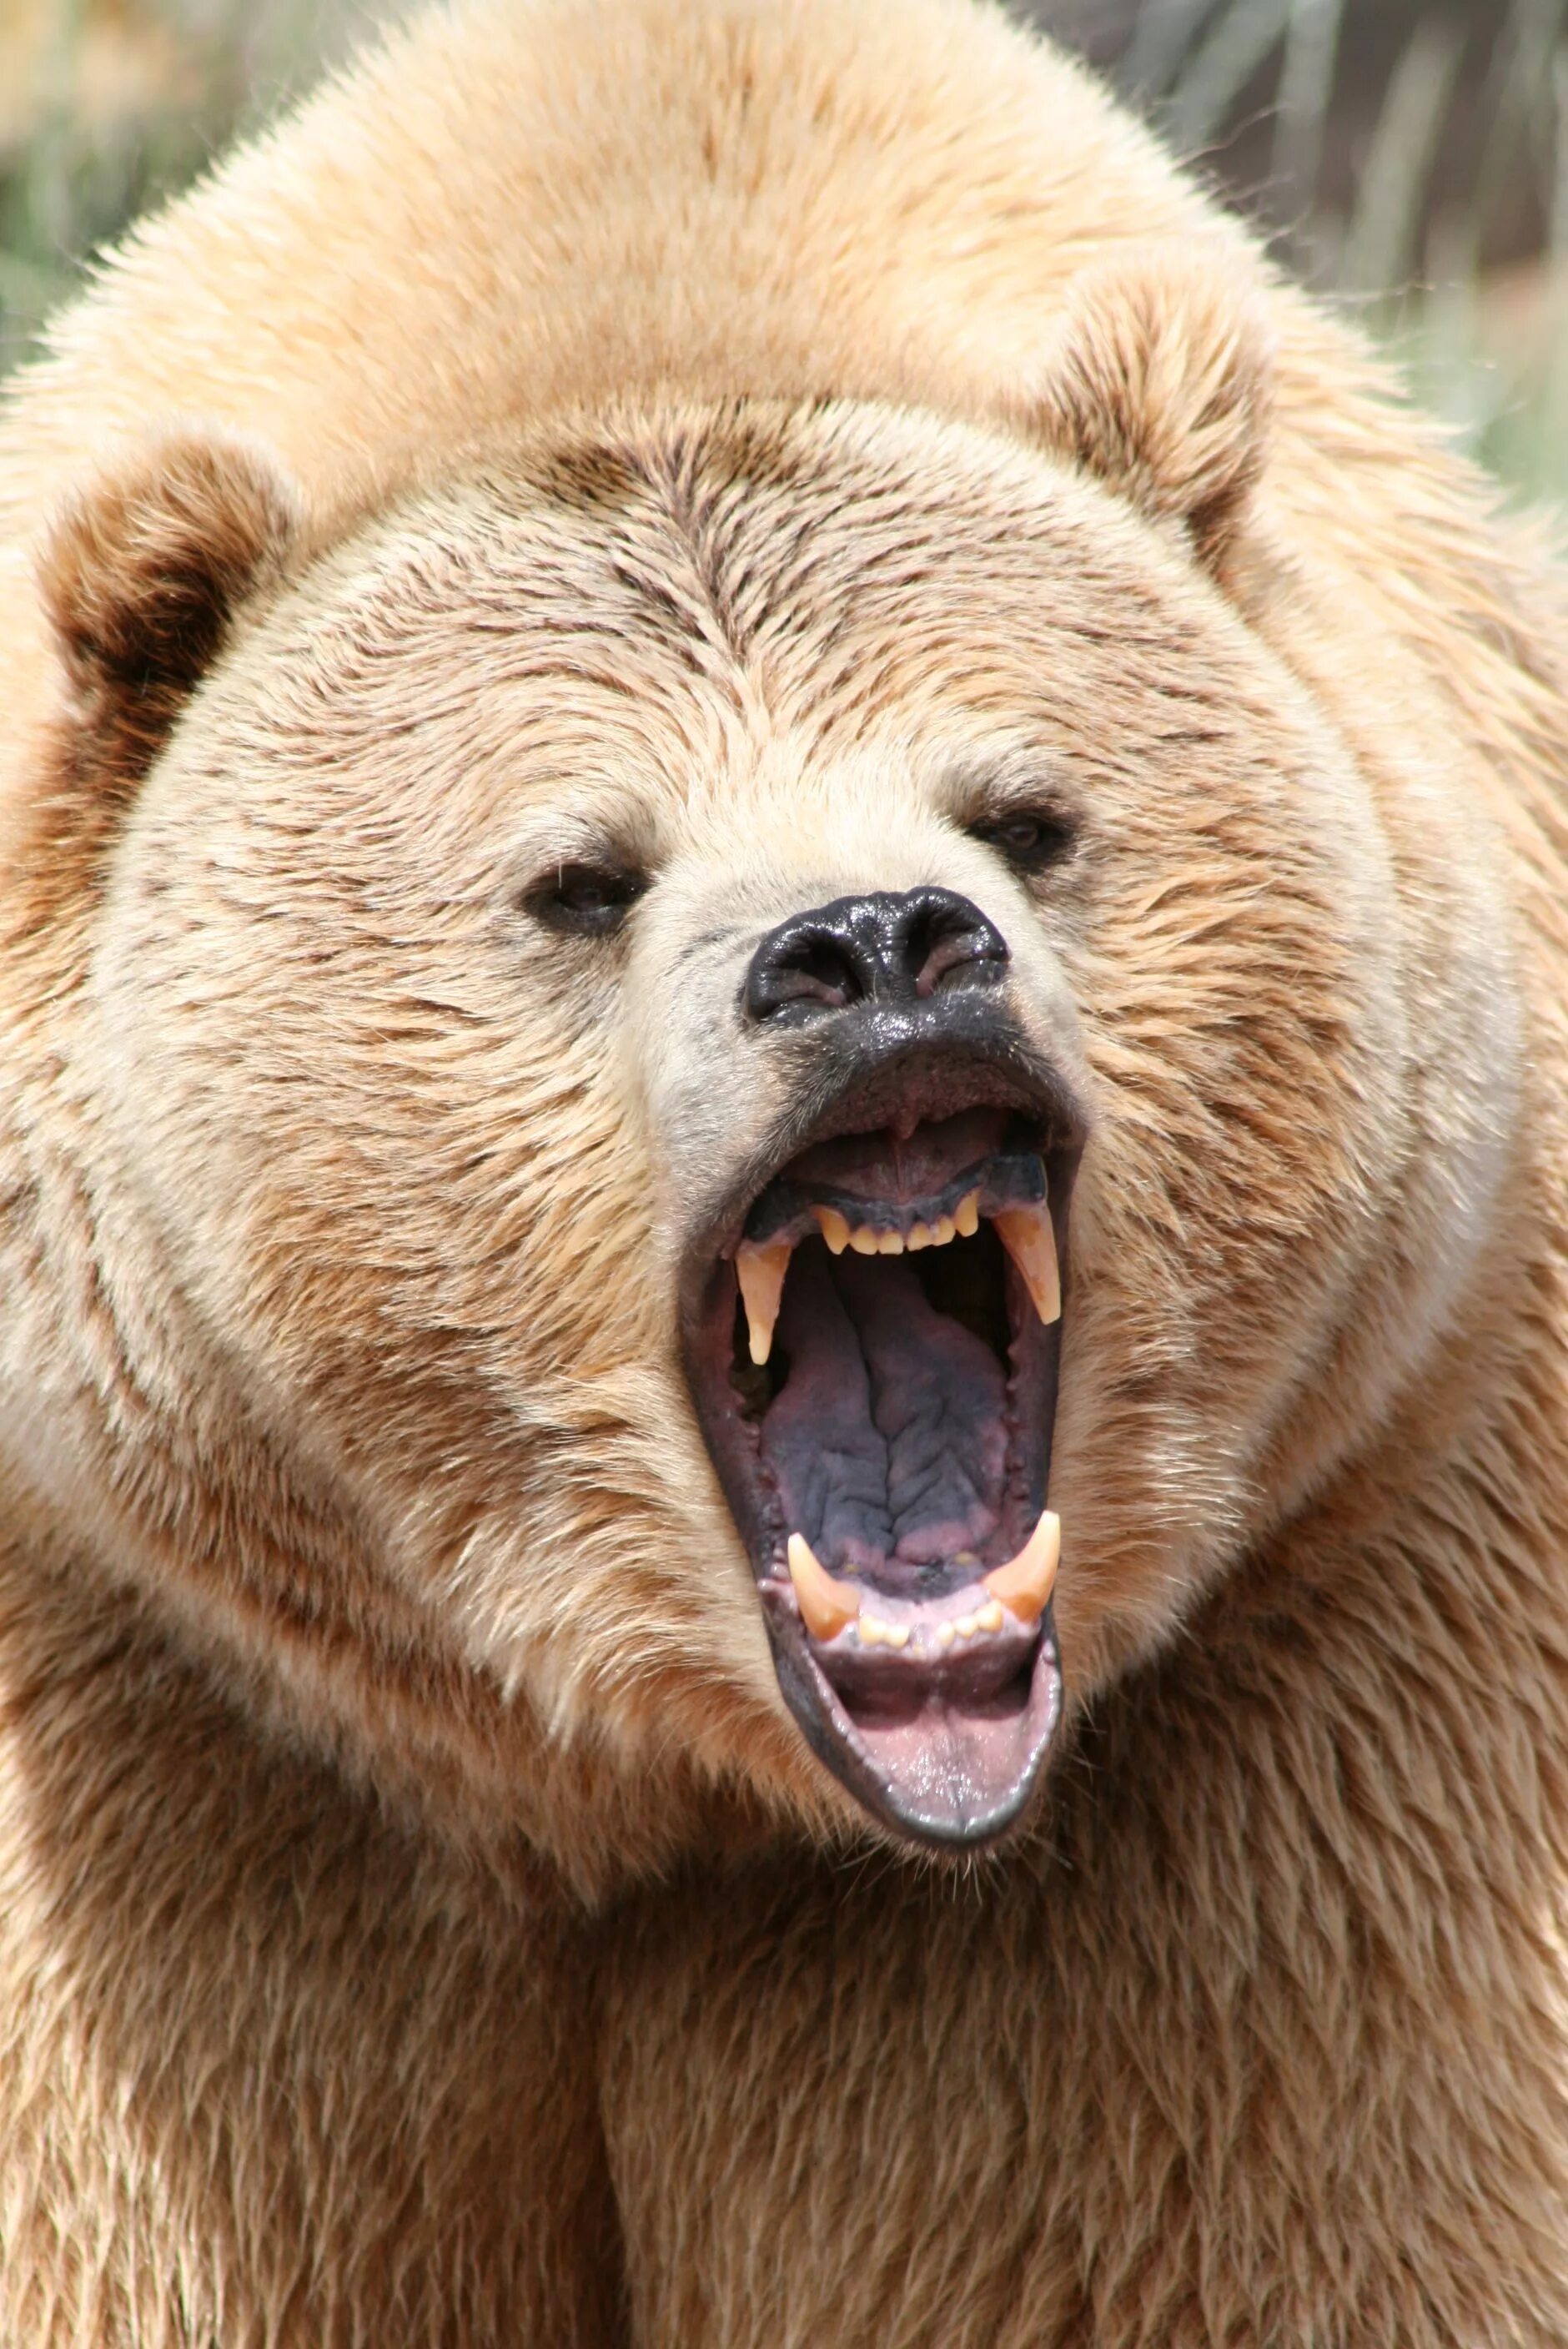 Гризли и бурый медведь. Гризли Grizzly, Гризли, медведь.. Бурый медведь. Оскал медведя. Bear s eye